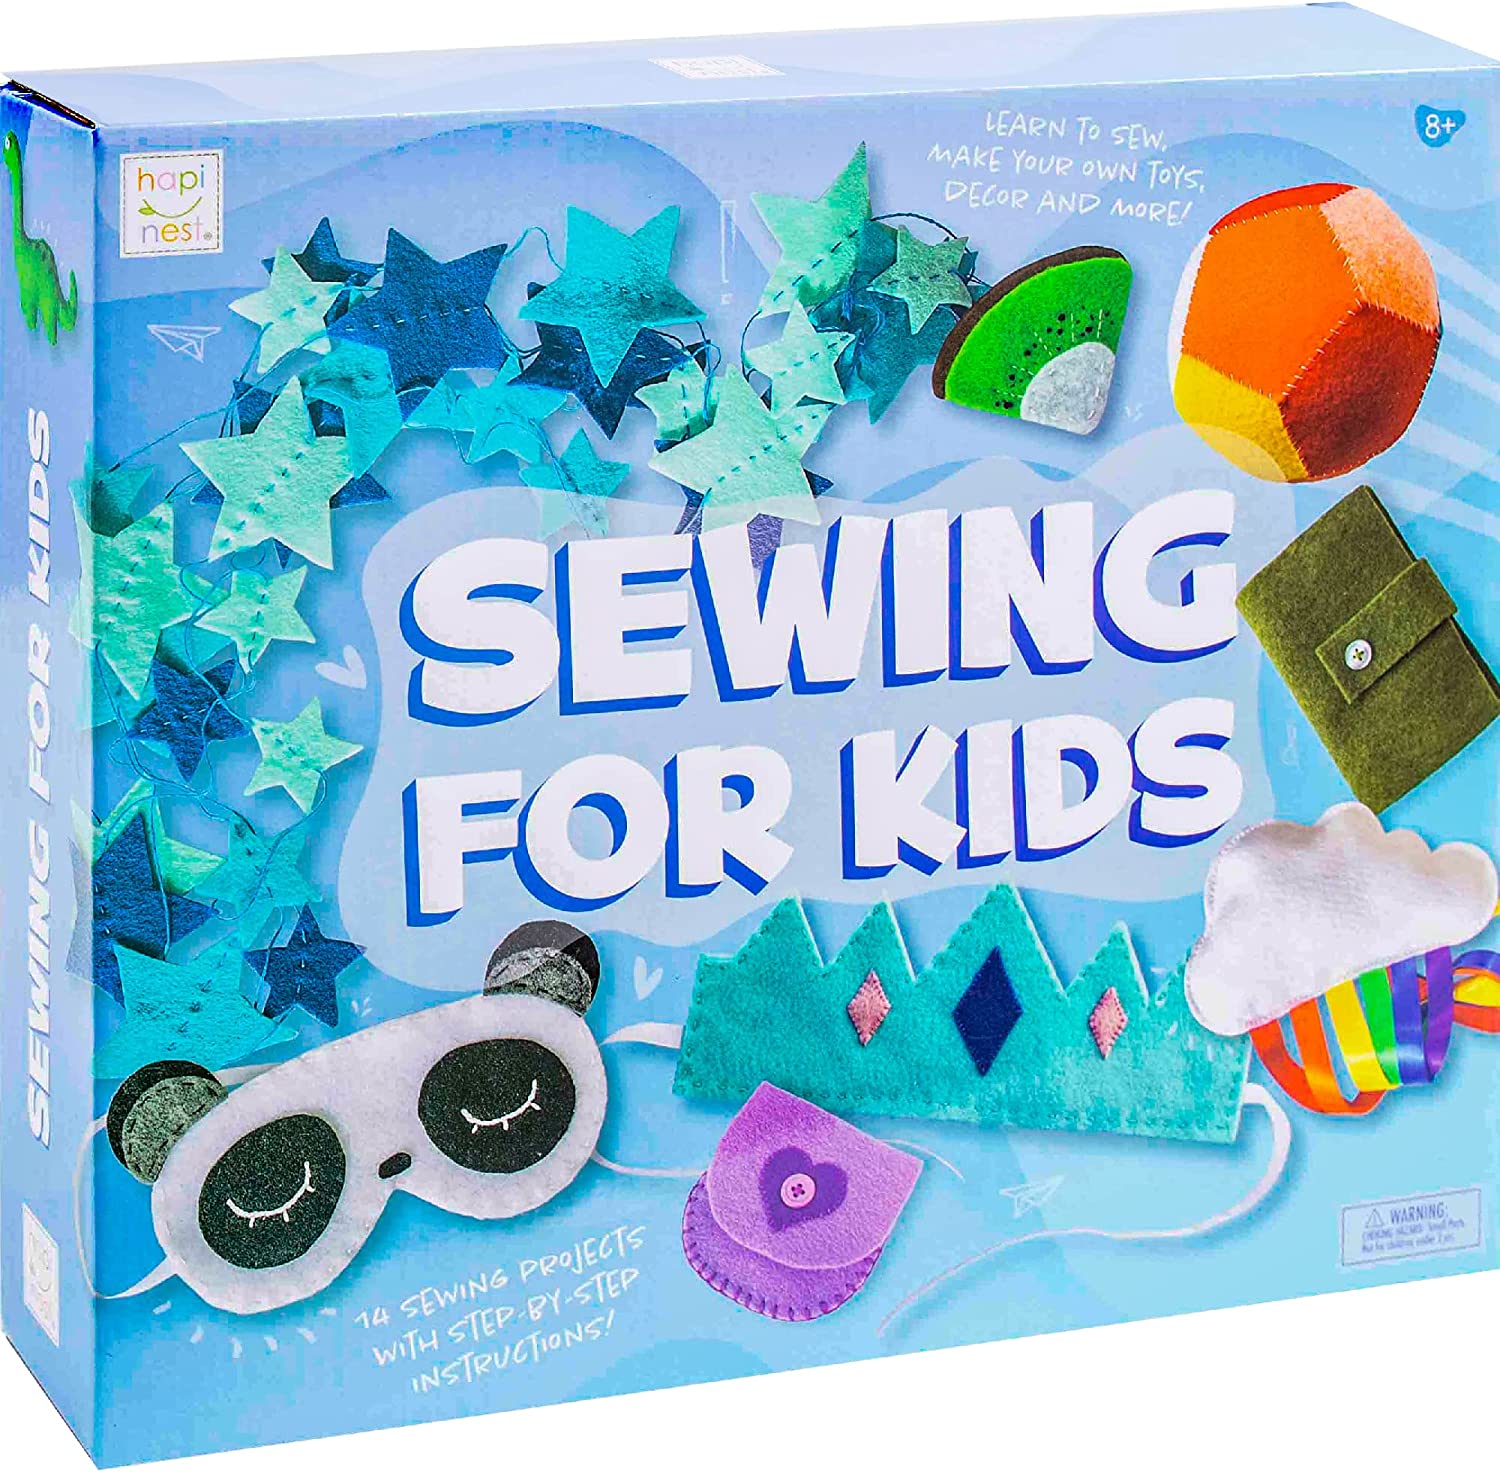  qollorette Felt Sewing Kit for Children, Make Your Own